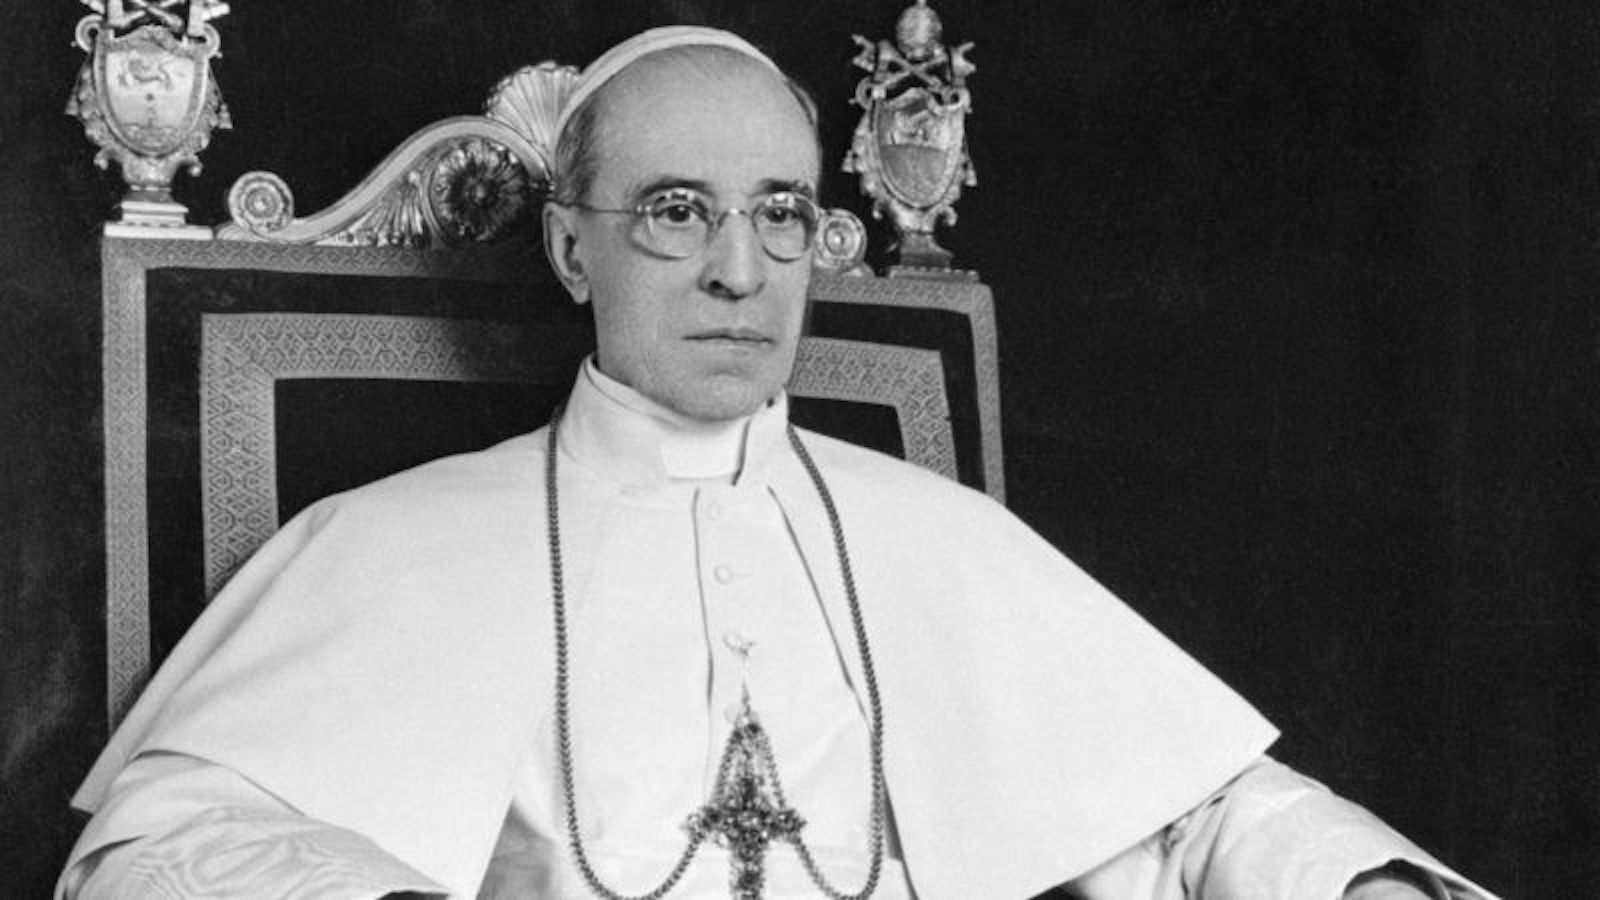 El papa Pío XII, cuyo periodo coincidió con la II Guerra Mundial,  probablemente conocía el Holocausto desde el principio, según cartas